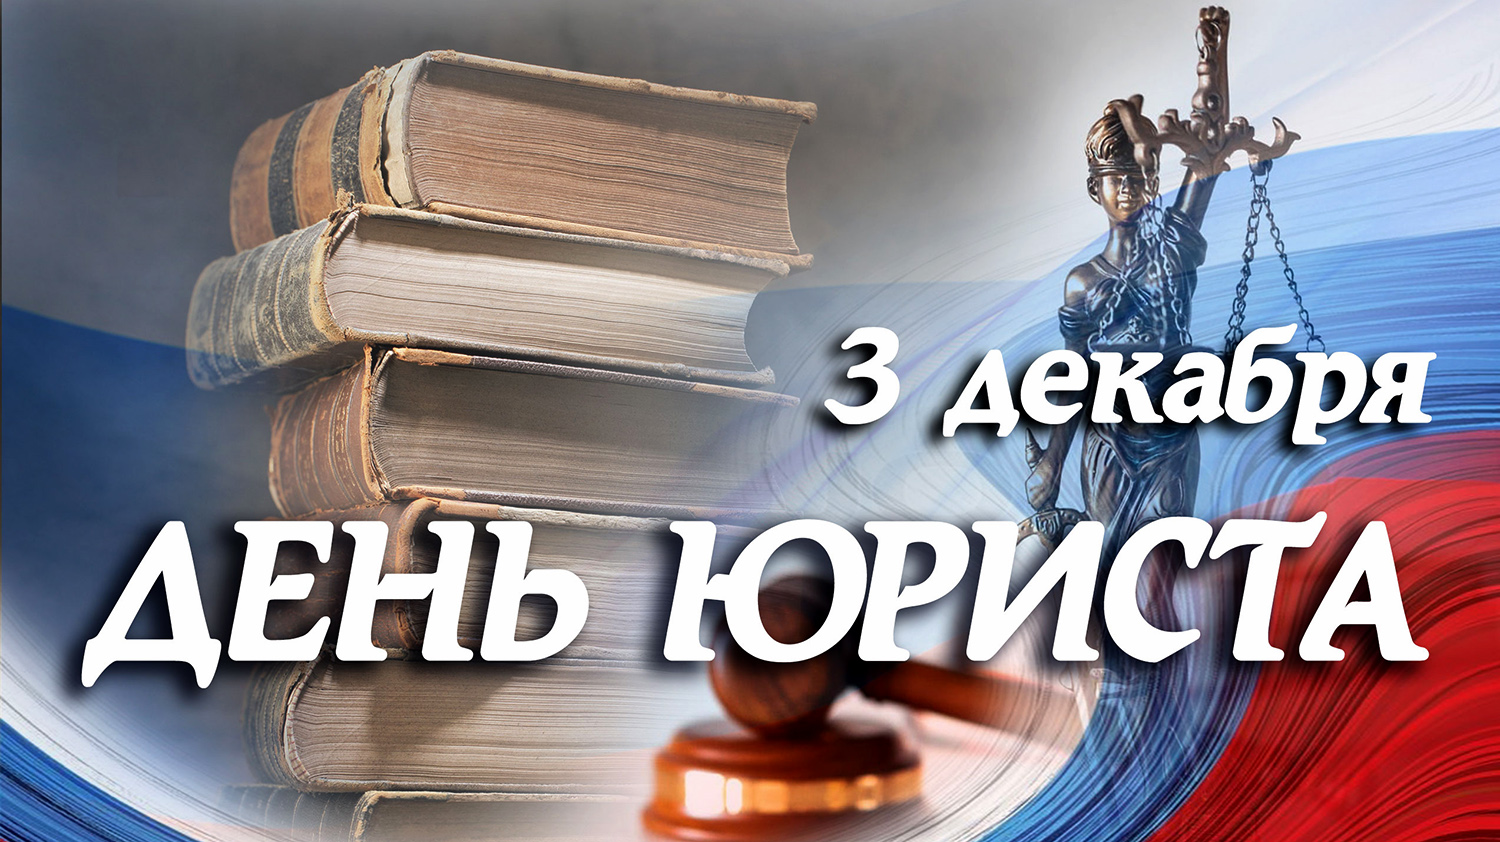 Сегодня в России – День юриста